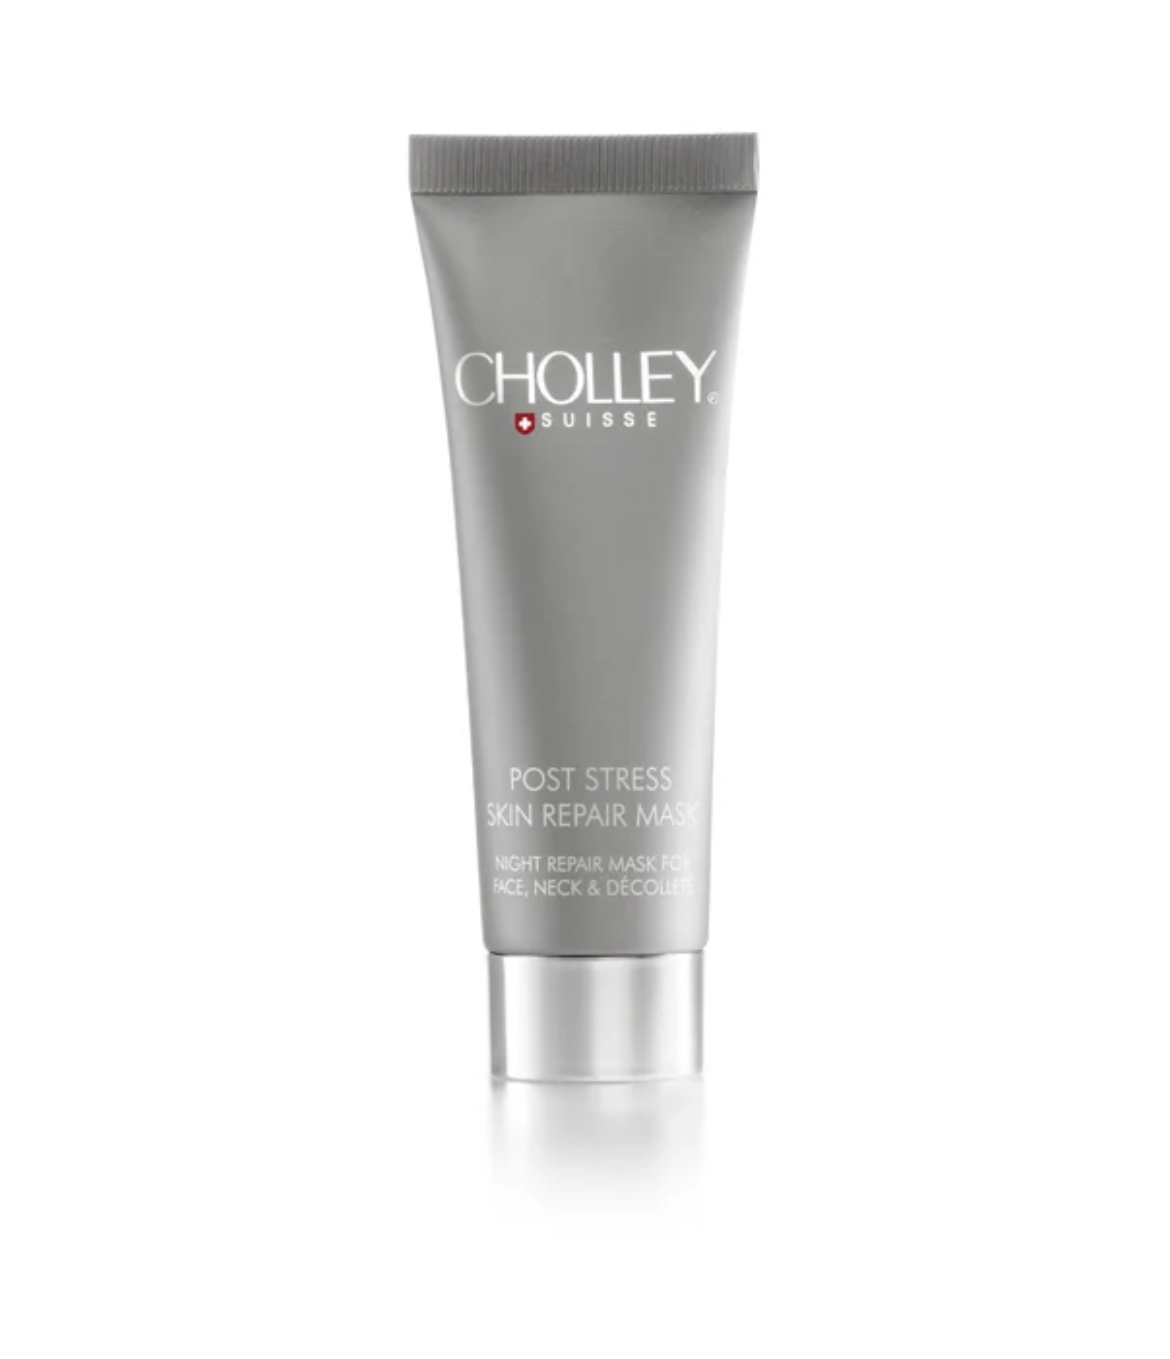 Cholley - Post Stress - Skin Repair Mask 50ml